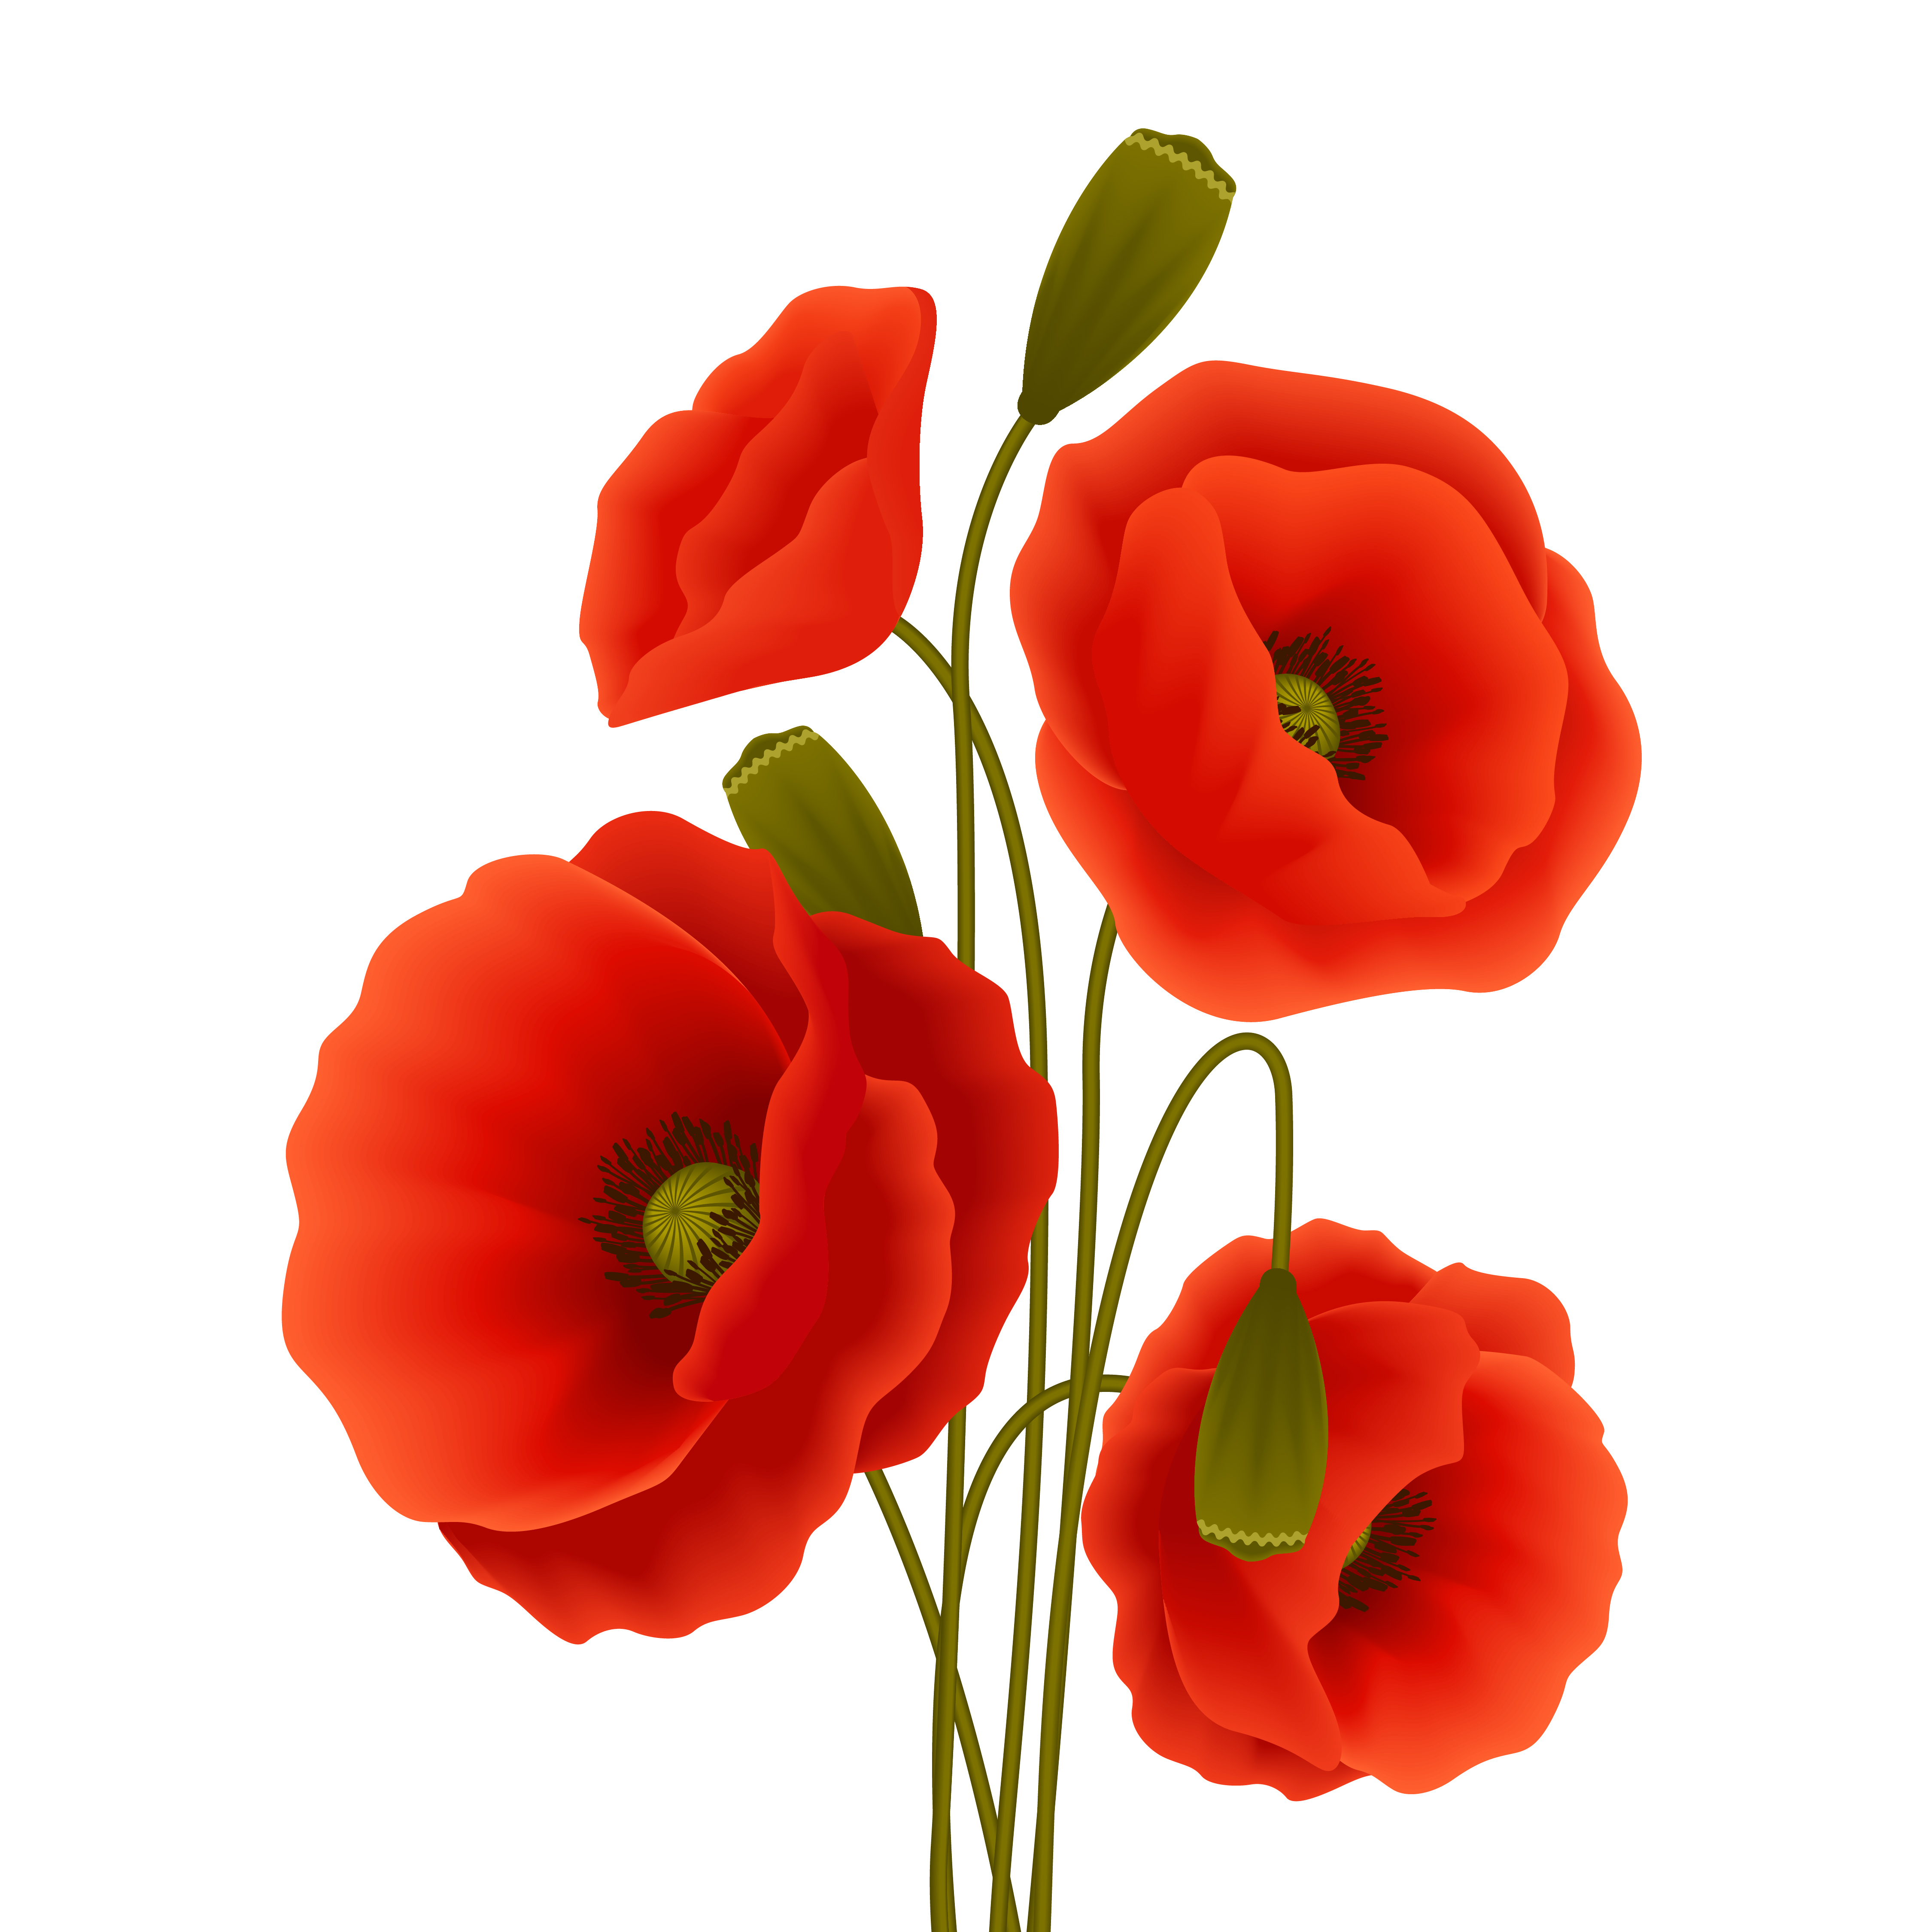 poppy-flower-poster-460089-vector-art-at-vecteezy